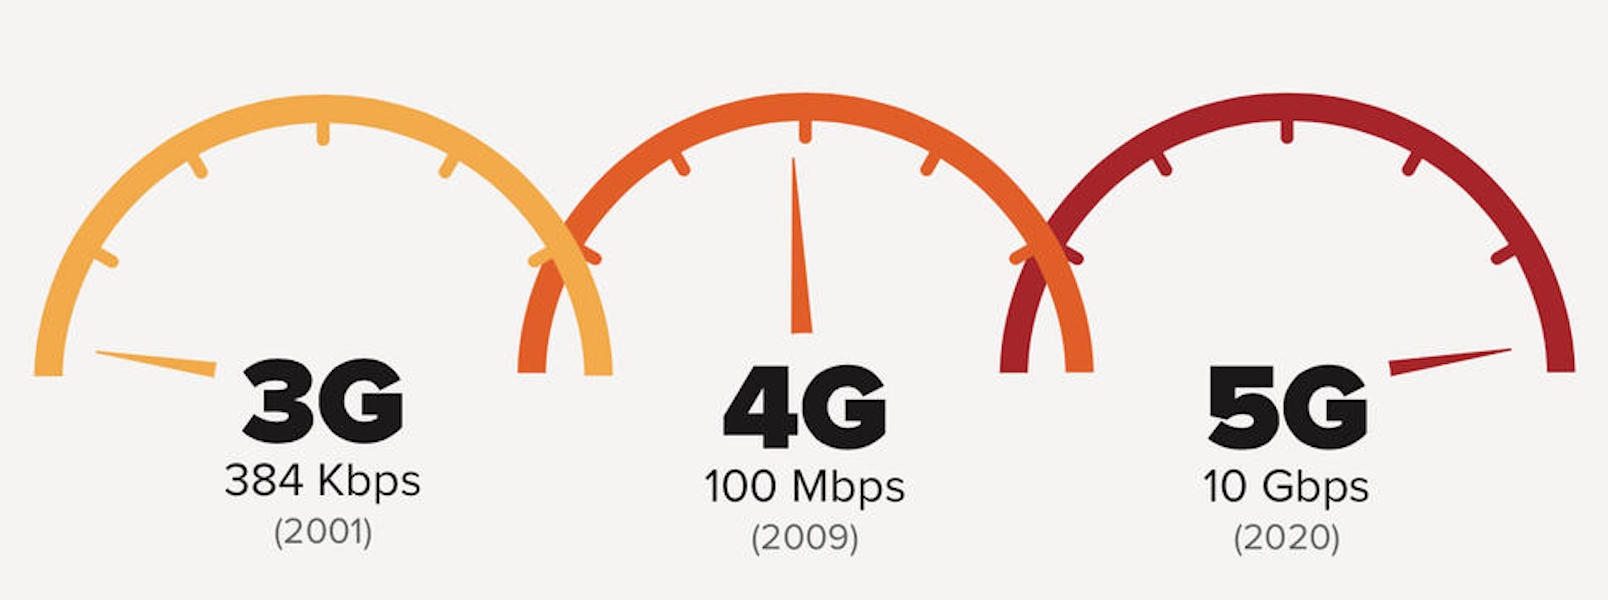 4g форум. 5g vs 4g. 2g vs 5g. 5g скорость интернета. Скорость интернета 3g и 4g.